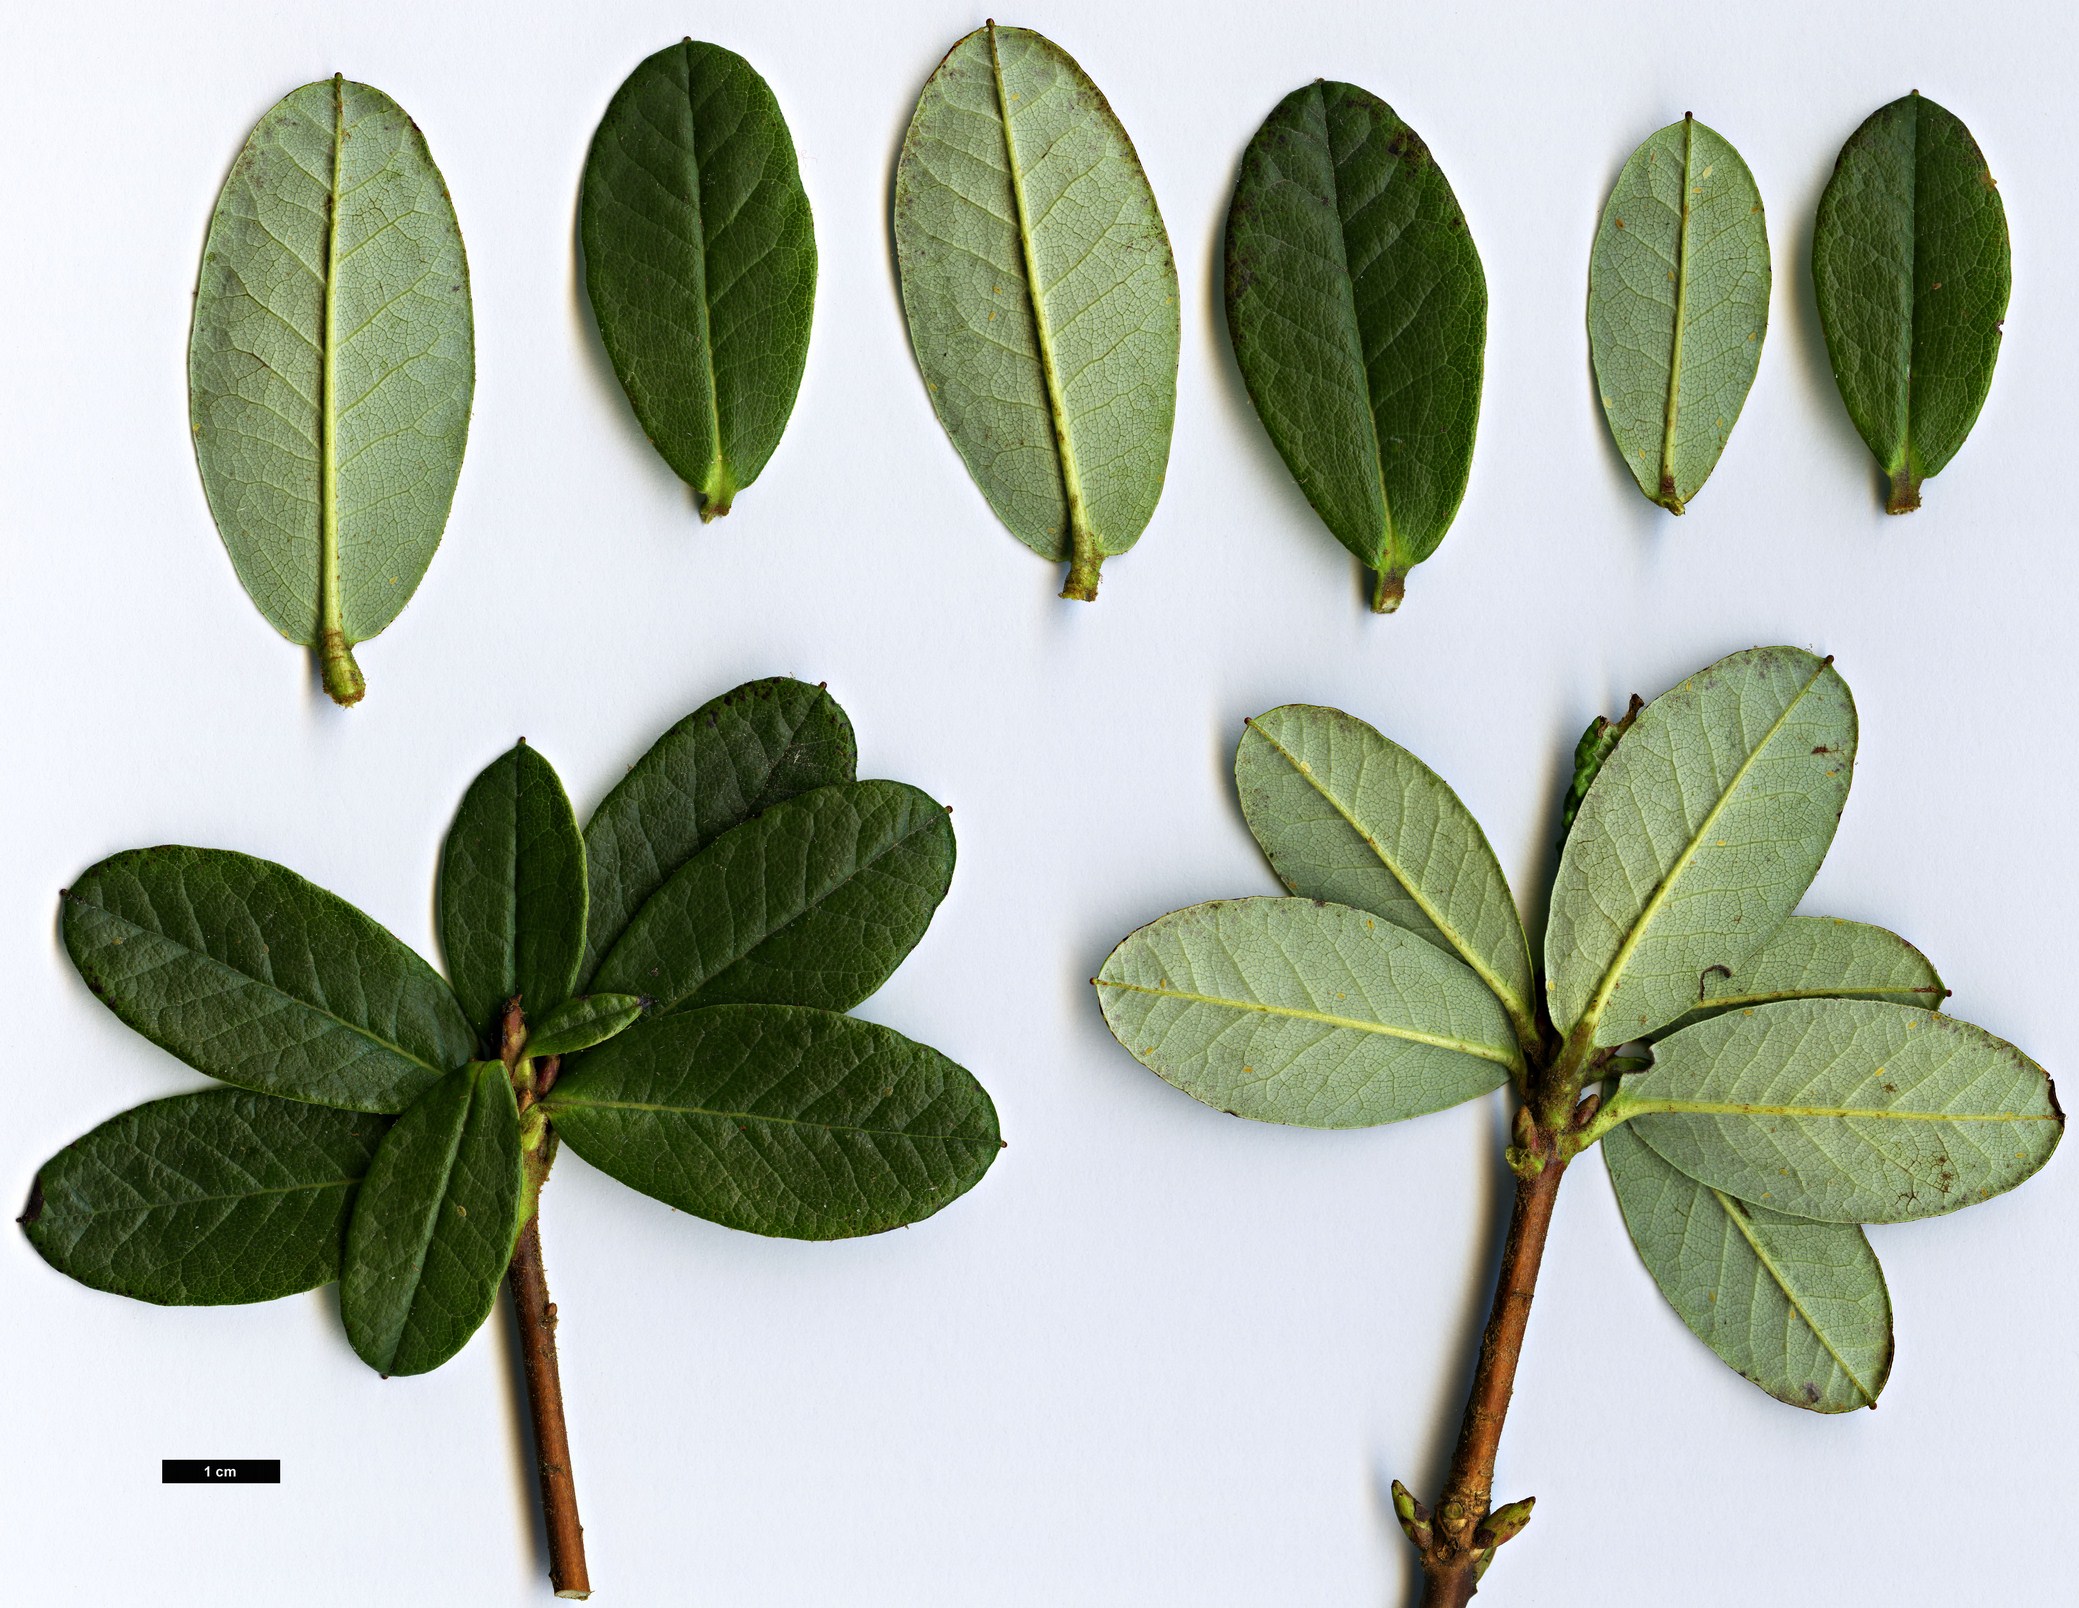 High resolution image: Family: Ericaceae - Genus: Rhododendron - Taxon: temenium - SpeciesSub: var. dealbatum